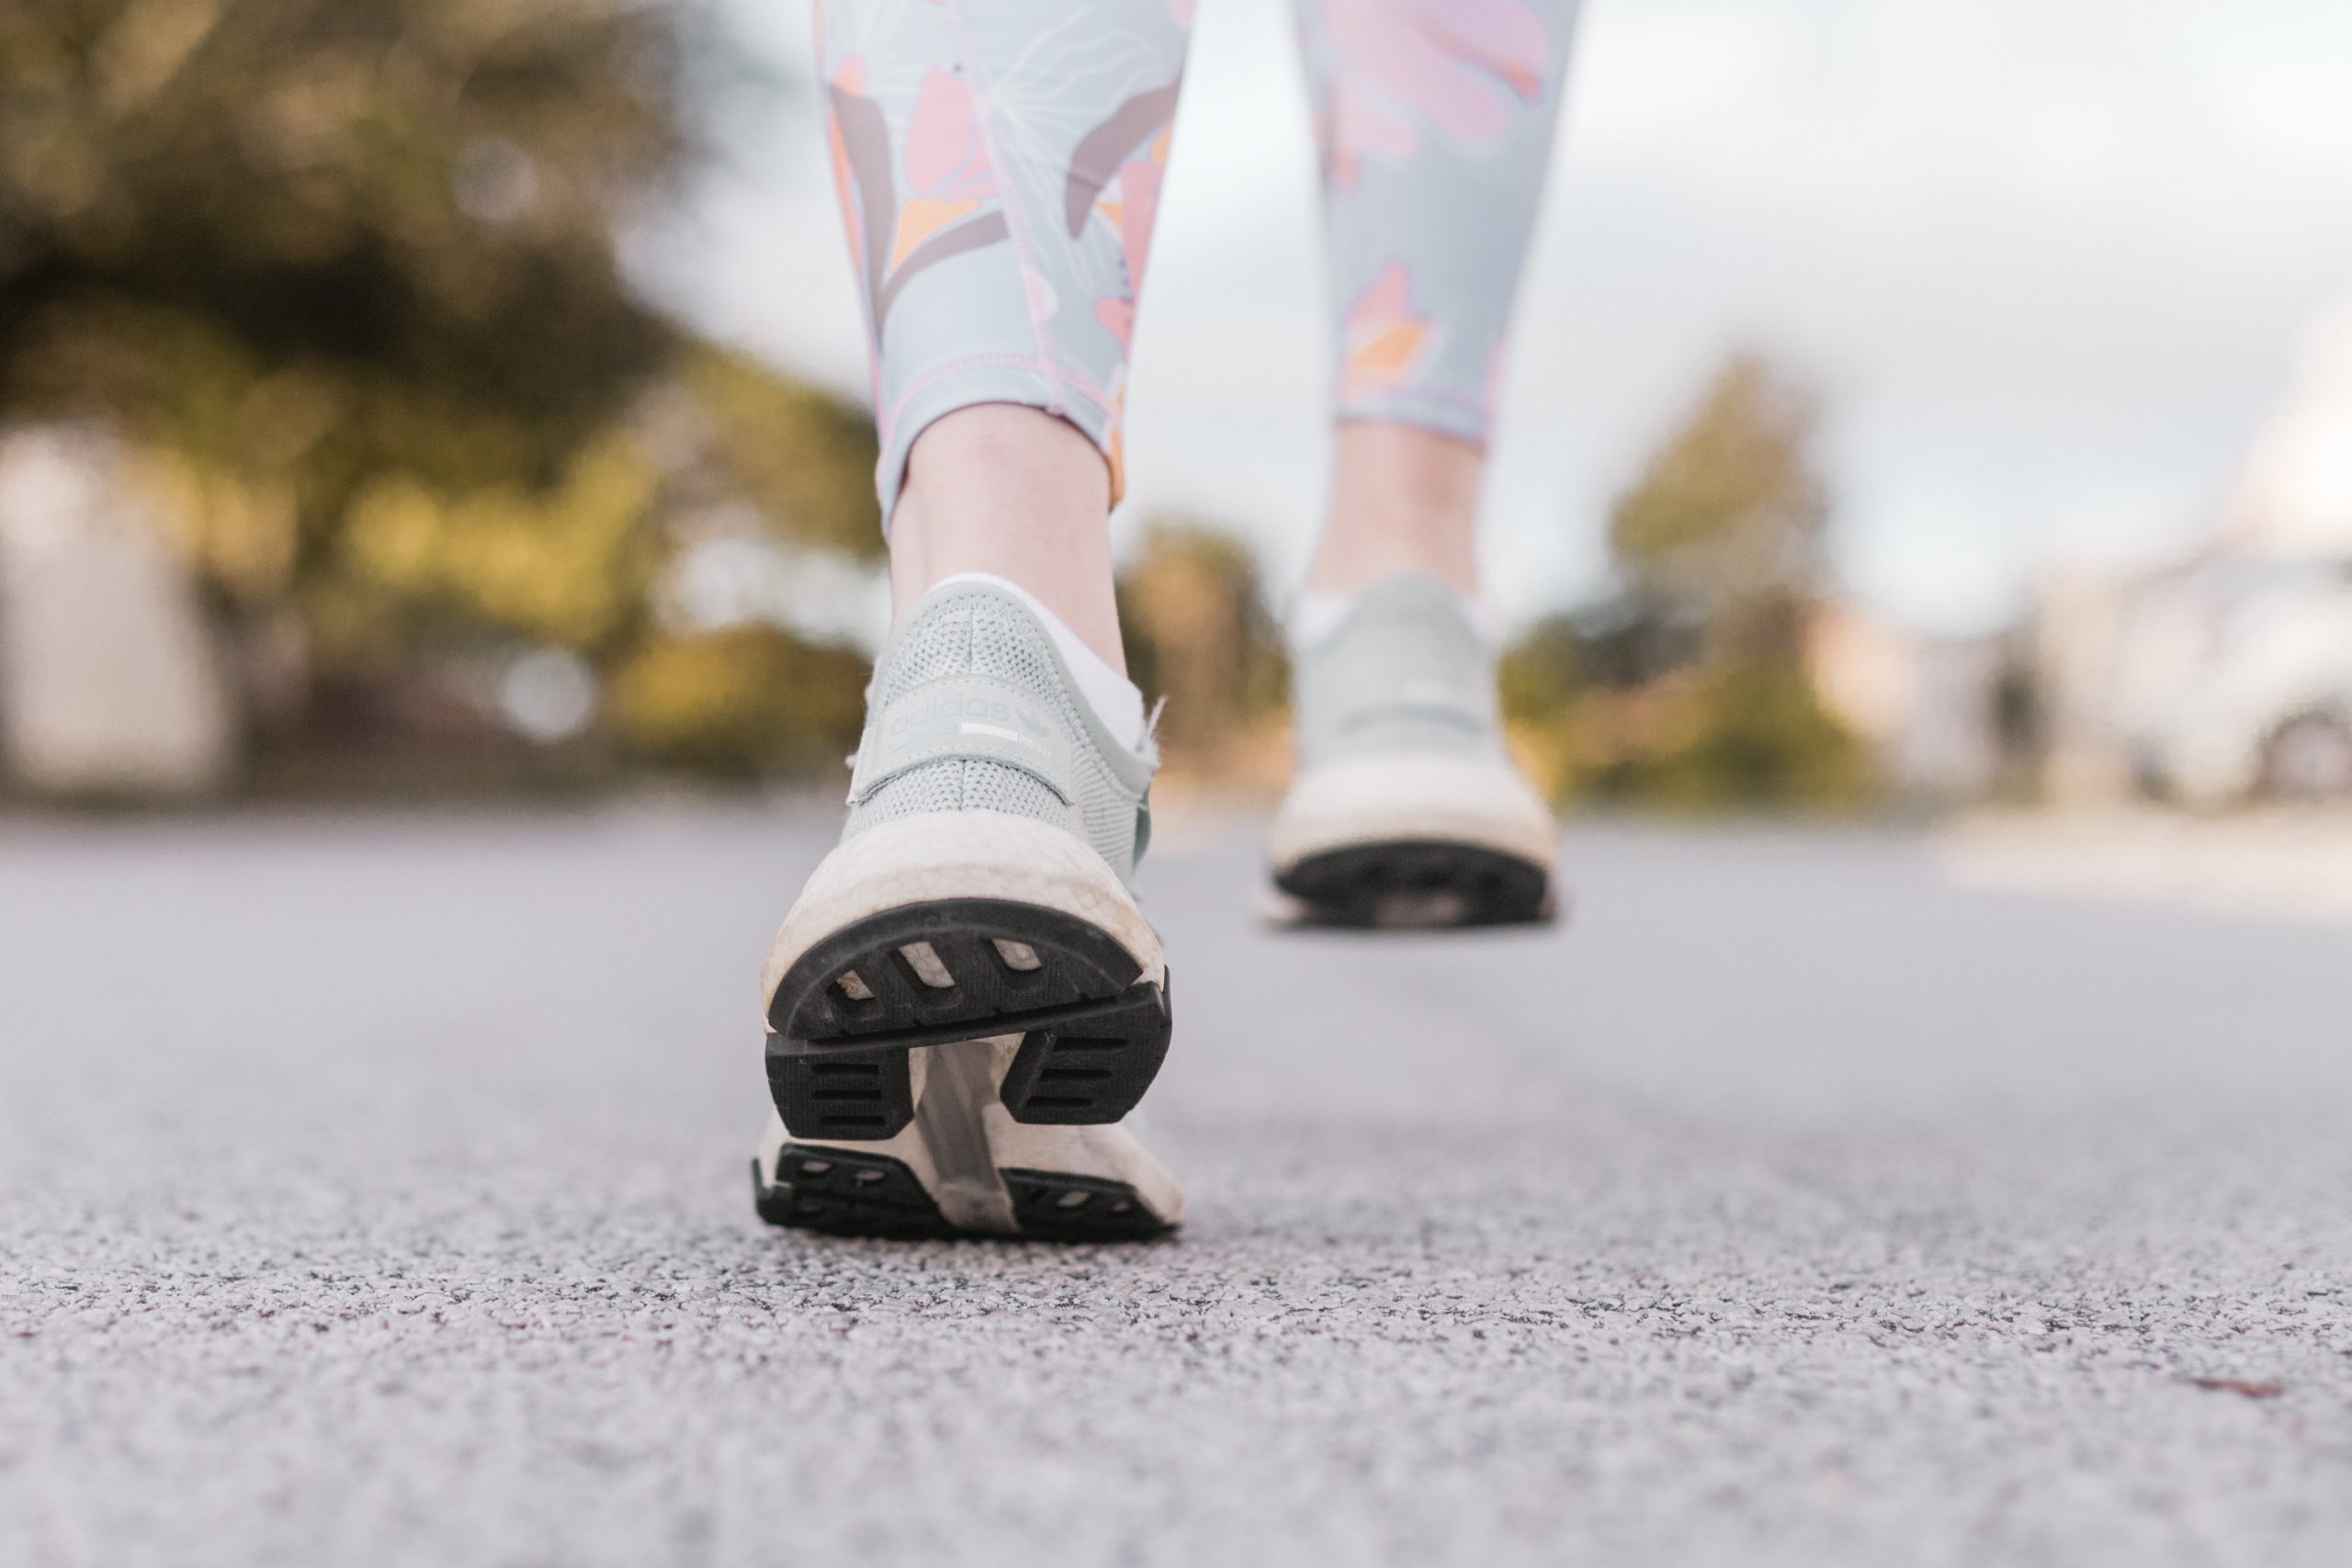 Какое количество минут ходьбы снизит риск смерти от сердечно-сосудистых заболеваний